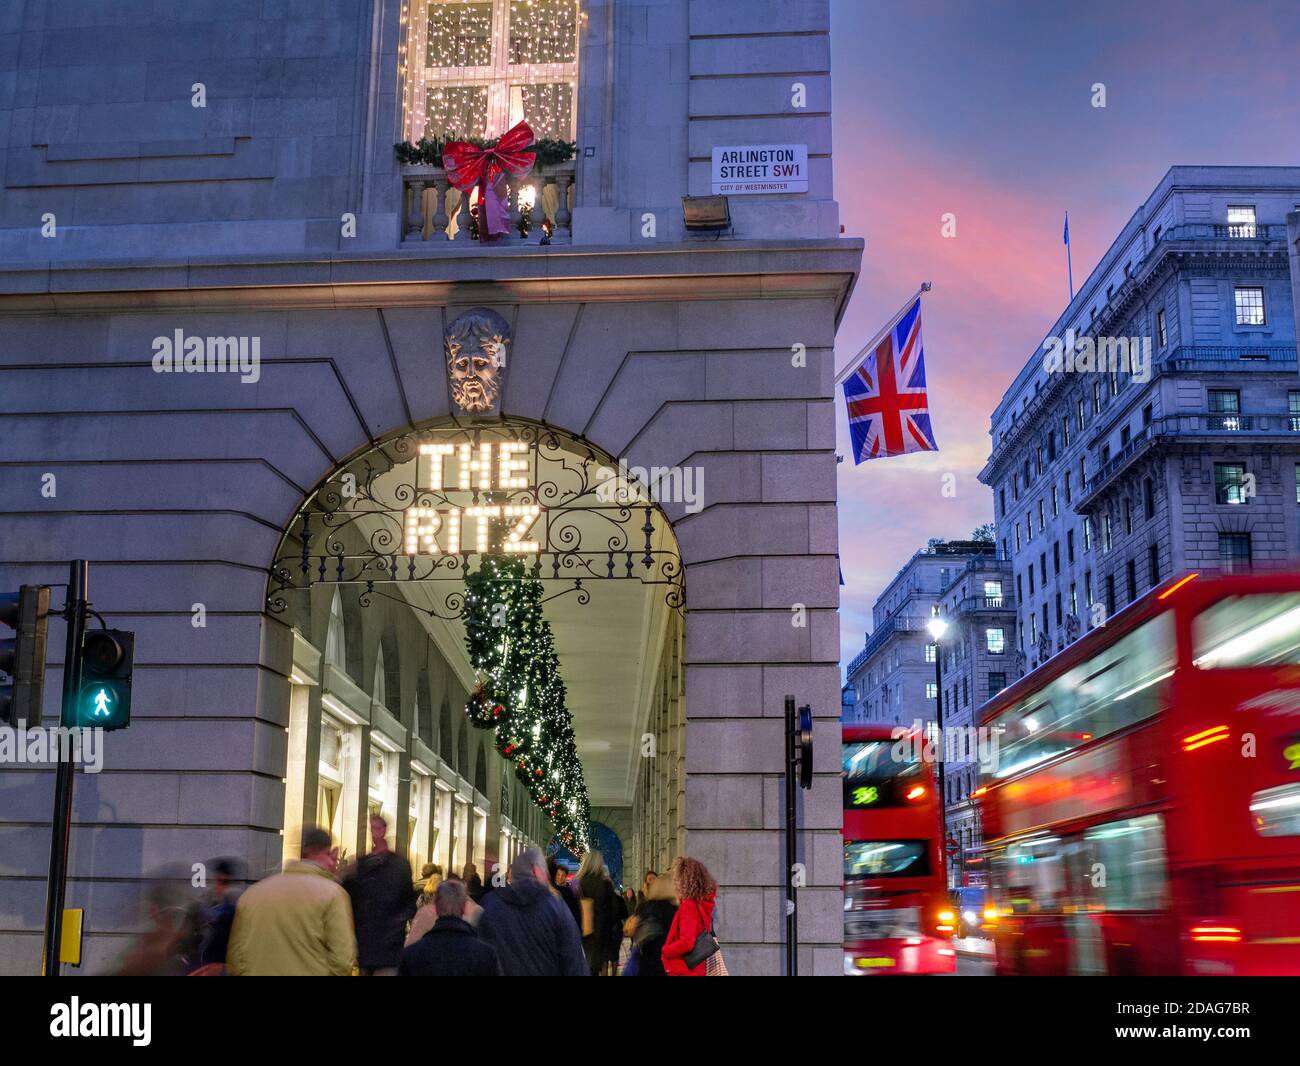 LONDON WEIHNACHTEN MASSEN das Ritz Hotel im Winter geschäftige Weihnachtszeit, Abendlicht ‘The Ritz’ Schild beleuchtet, mit einer Union Jack Flagge, Käufer und vorbei verschwommen London roten Bussen Arlington Street Piccadilly London UK Stockfoto